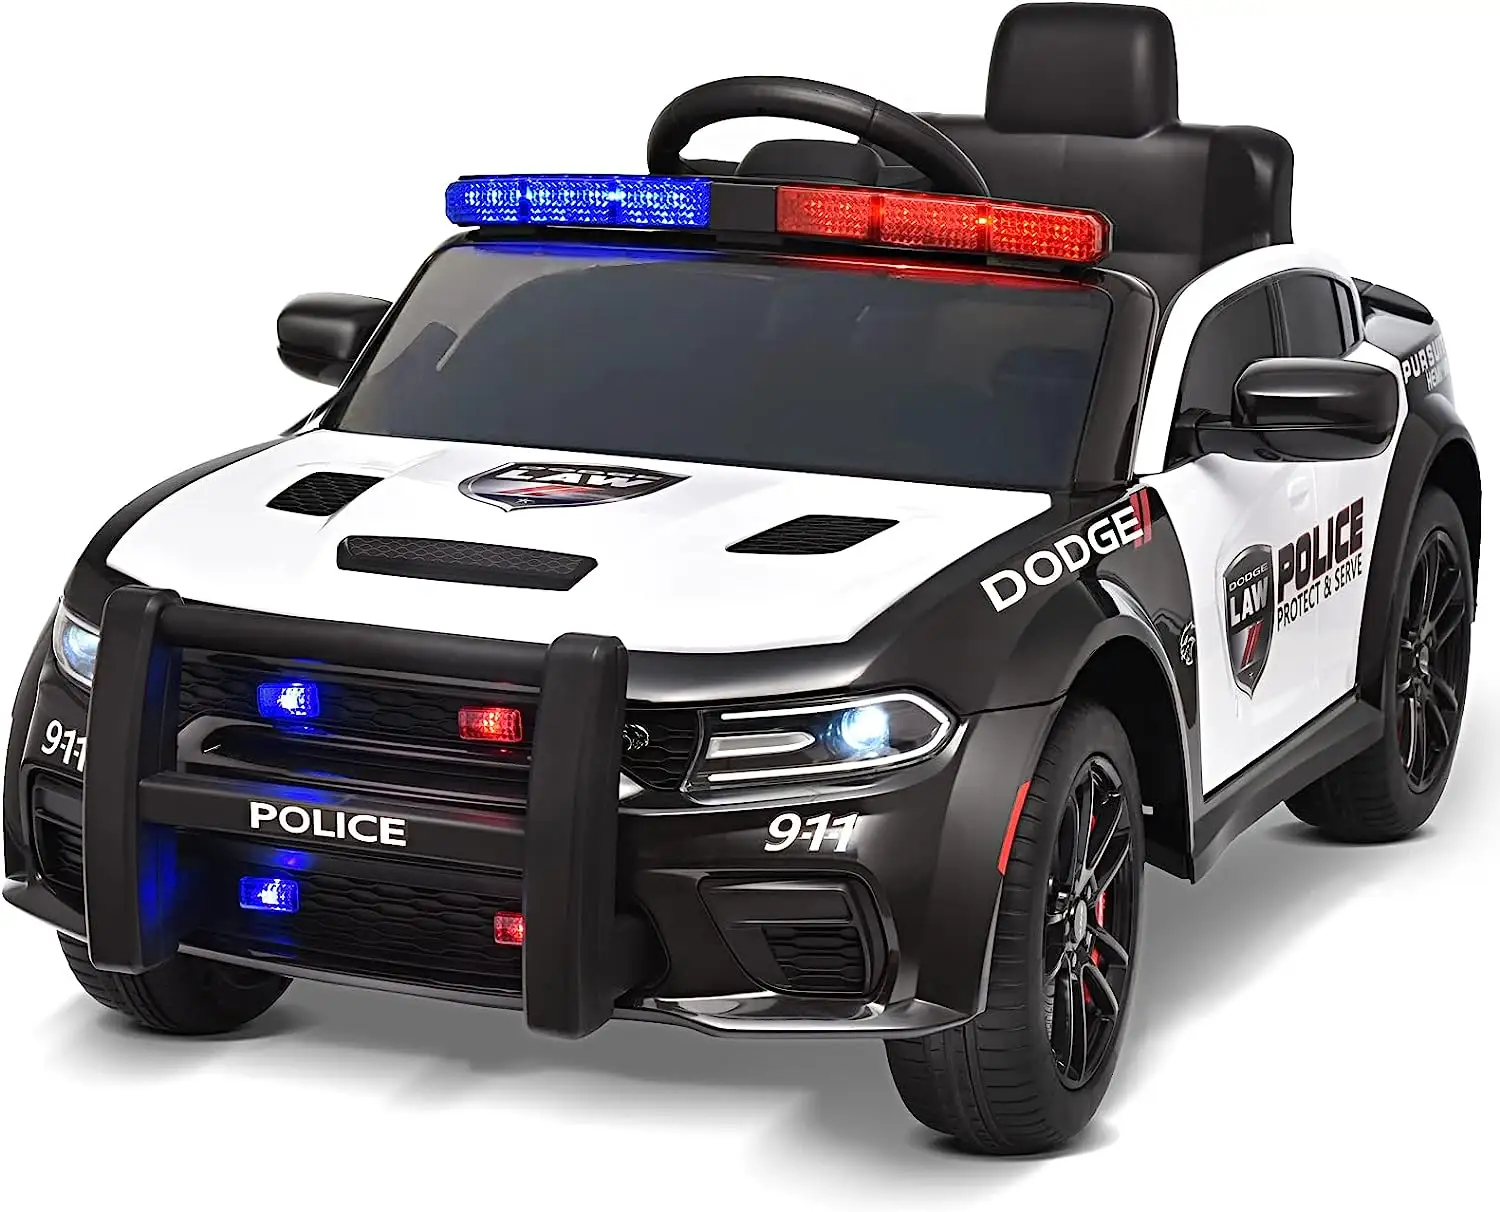 Dalisi novo Licenciado Dodge crianças Carro de Polícia Crianças 12V Elétrico Controle Remoto Toy Car Ride-on Carro para Crianças para Dirigir